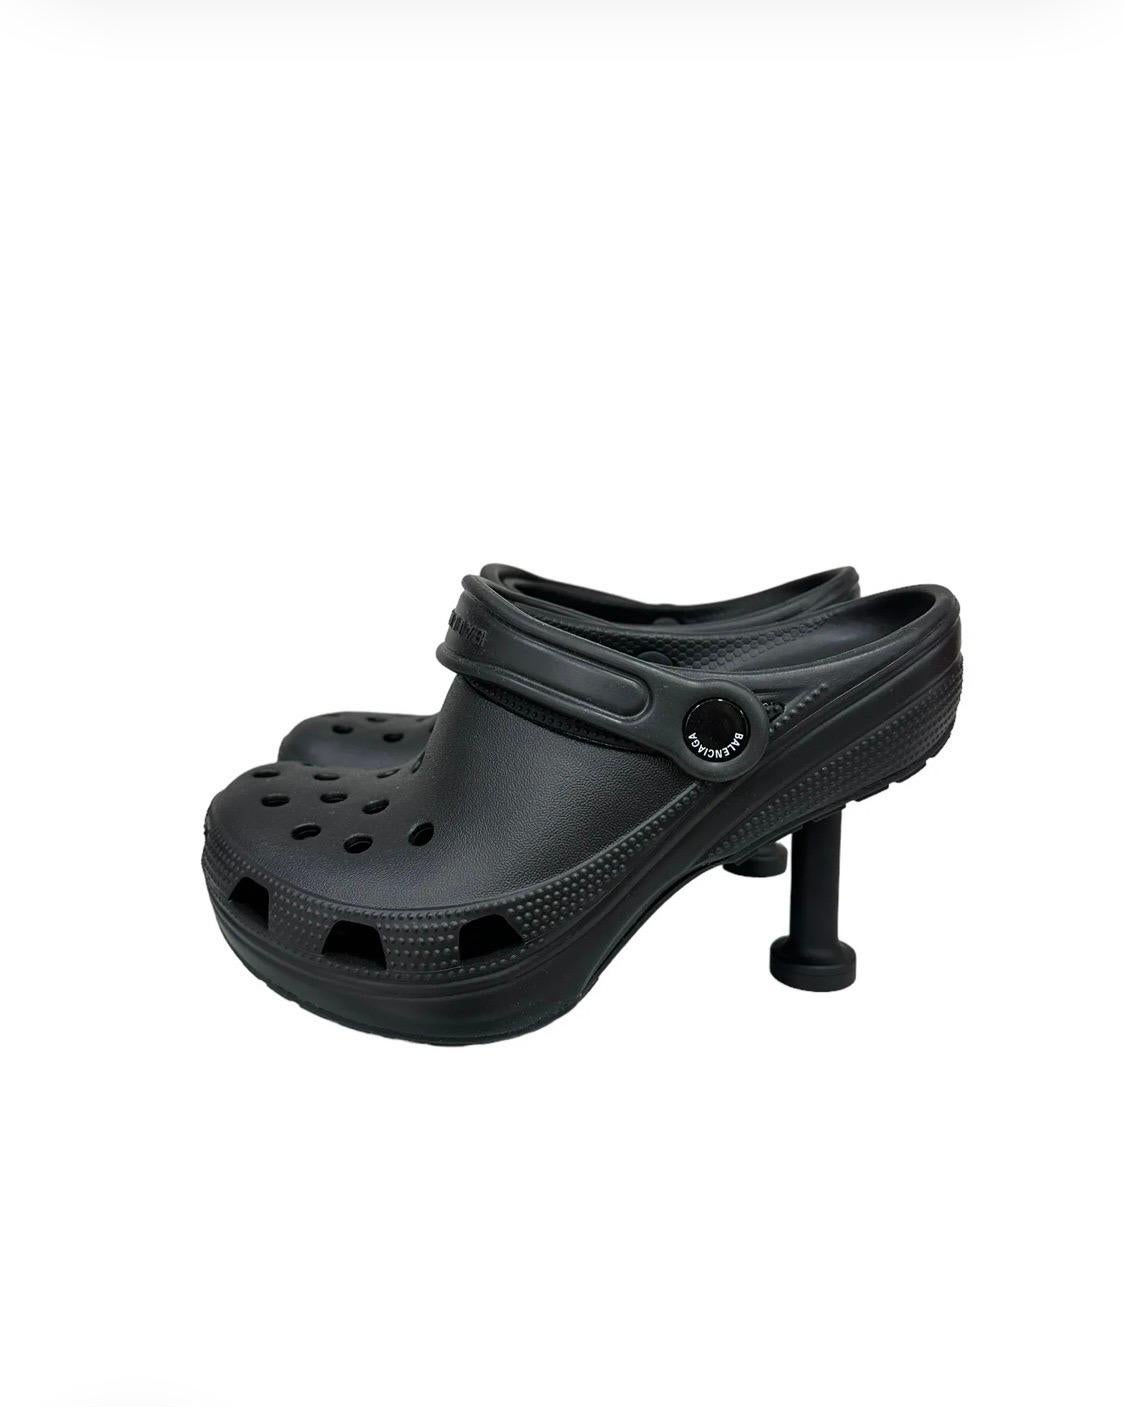 Pump Crocs Madame firmate Balenciaga x Crocs, collezione Clones Limited Edition, realizzata in gomma nera con hardware nero. Presenta una punta arrotondata con un tacco di 8 centimetri. Sulla parte posteriore è dotata di una fascetta con logo